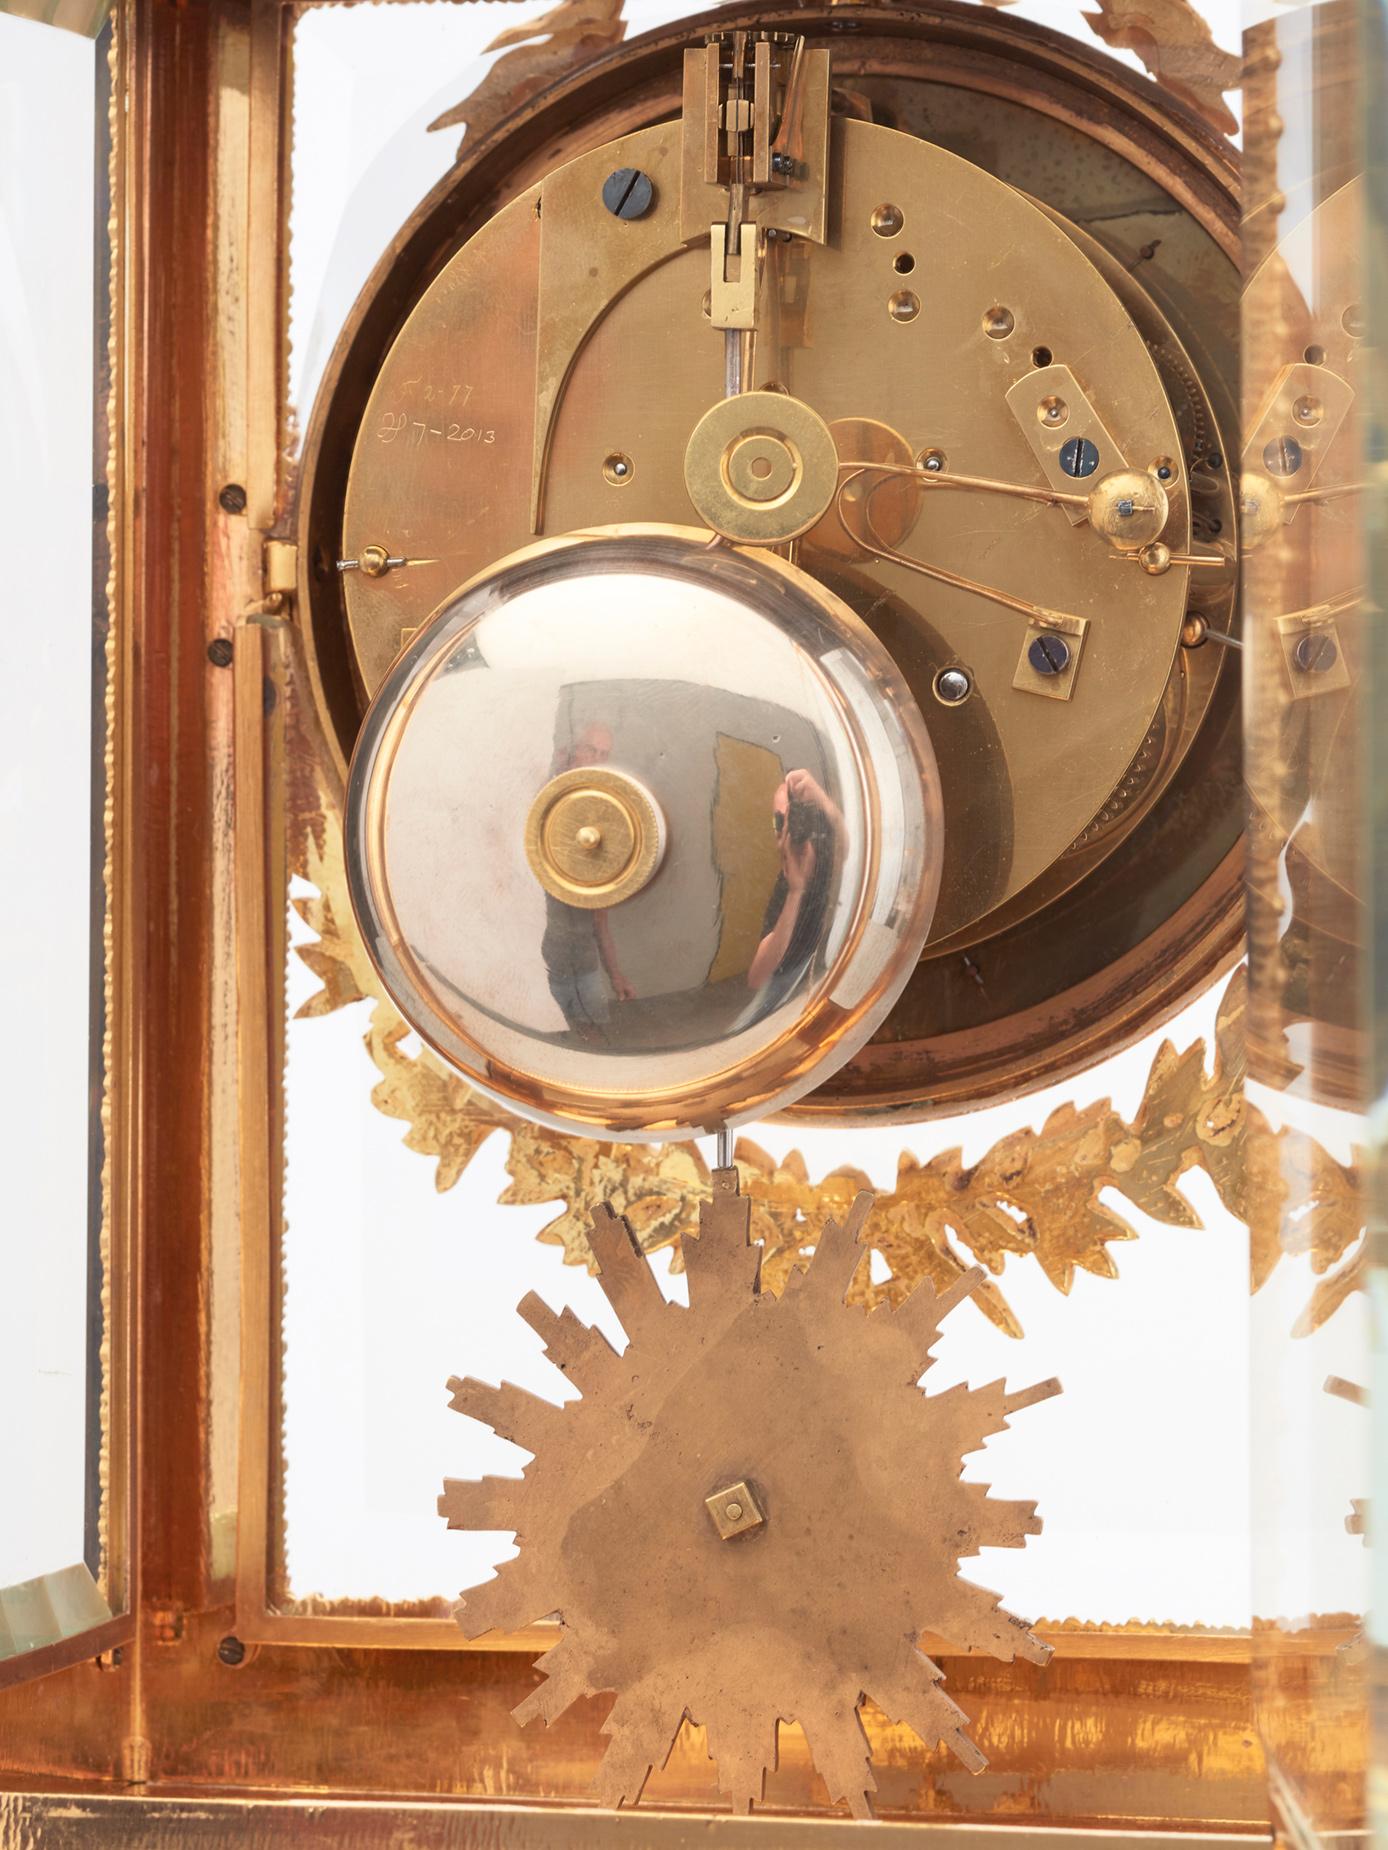 La haute qualité joliment  de magnifiques bronzes dorés sur le boîtier en combinaison avec le charmant cadran multicolore  L'élégant boîtier rectangulaire à quatre glaces est d'une taille très appréciée. Le mouvement à crémaillère de 8 jours est